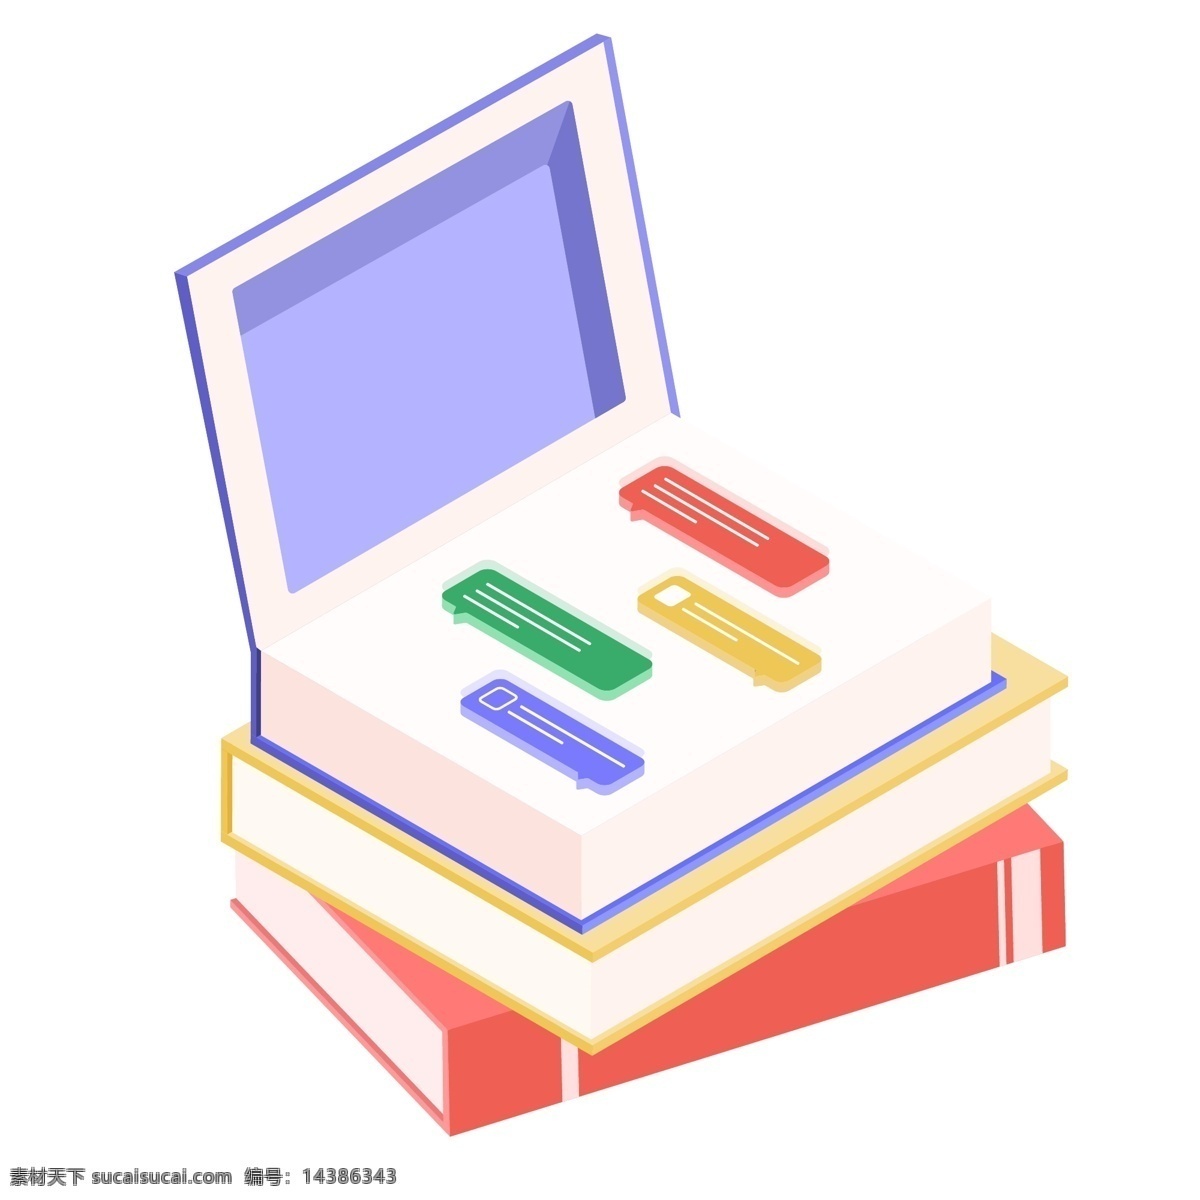 d 书籍 信息 科技 办公 矢量 元素 书本 色彩 对话框 紫色 2.5d